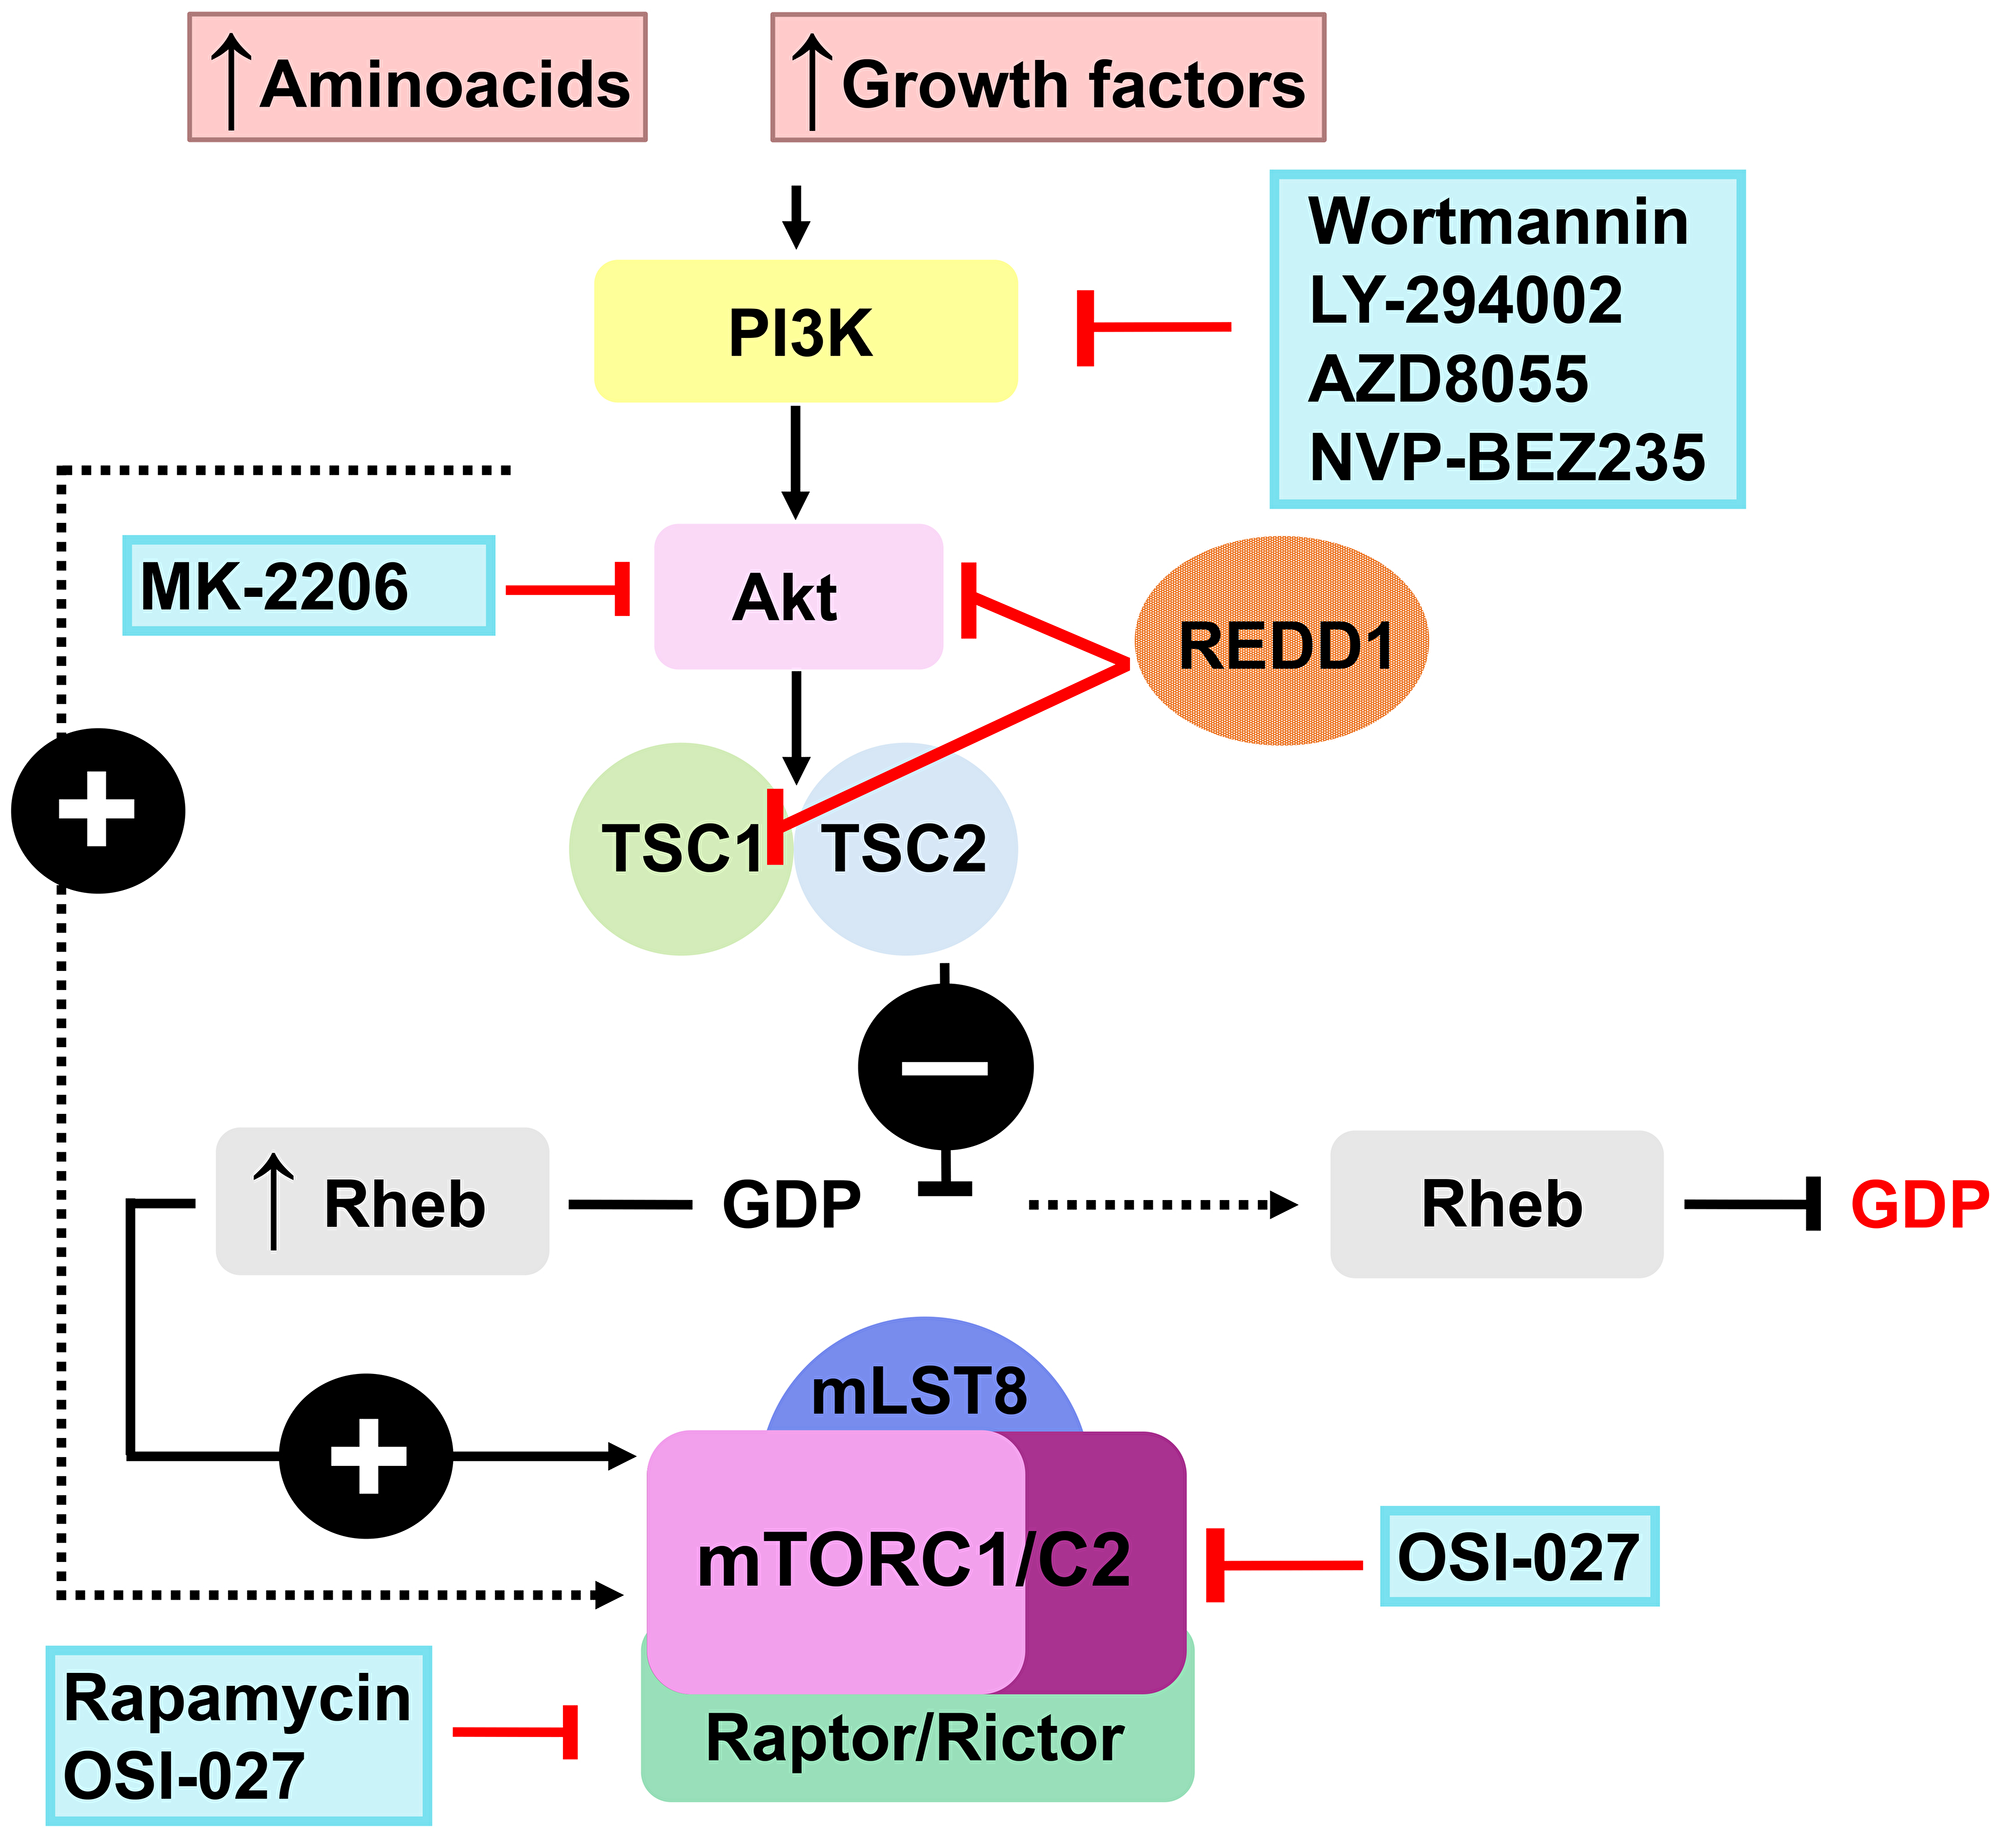 Putative REDD1 inhibitors from the PI3K/Akt/mTOR modulators class.